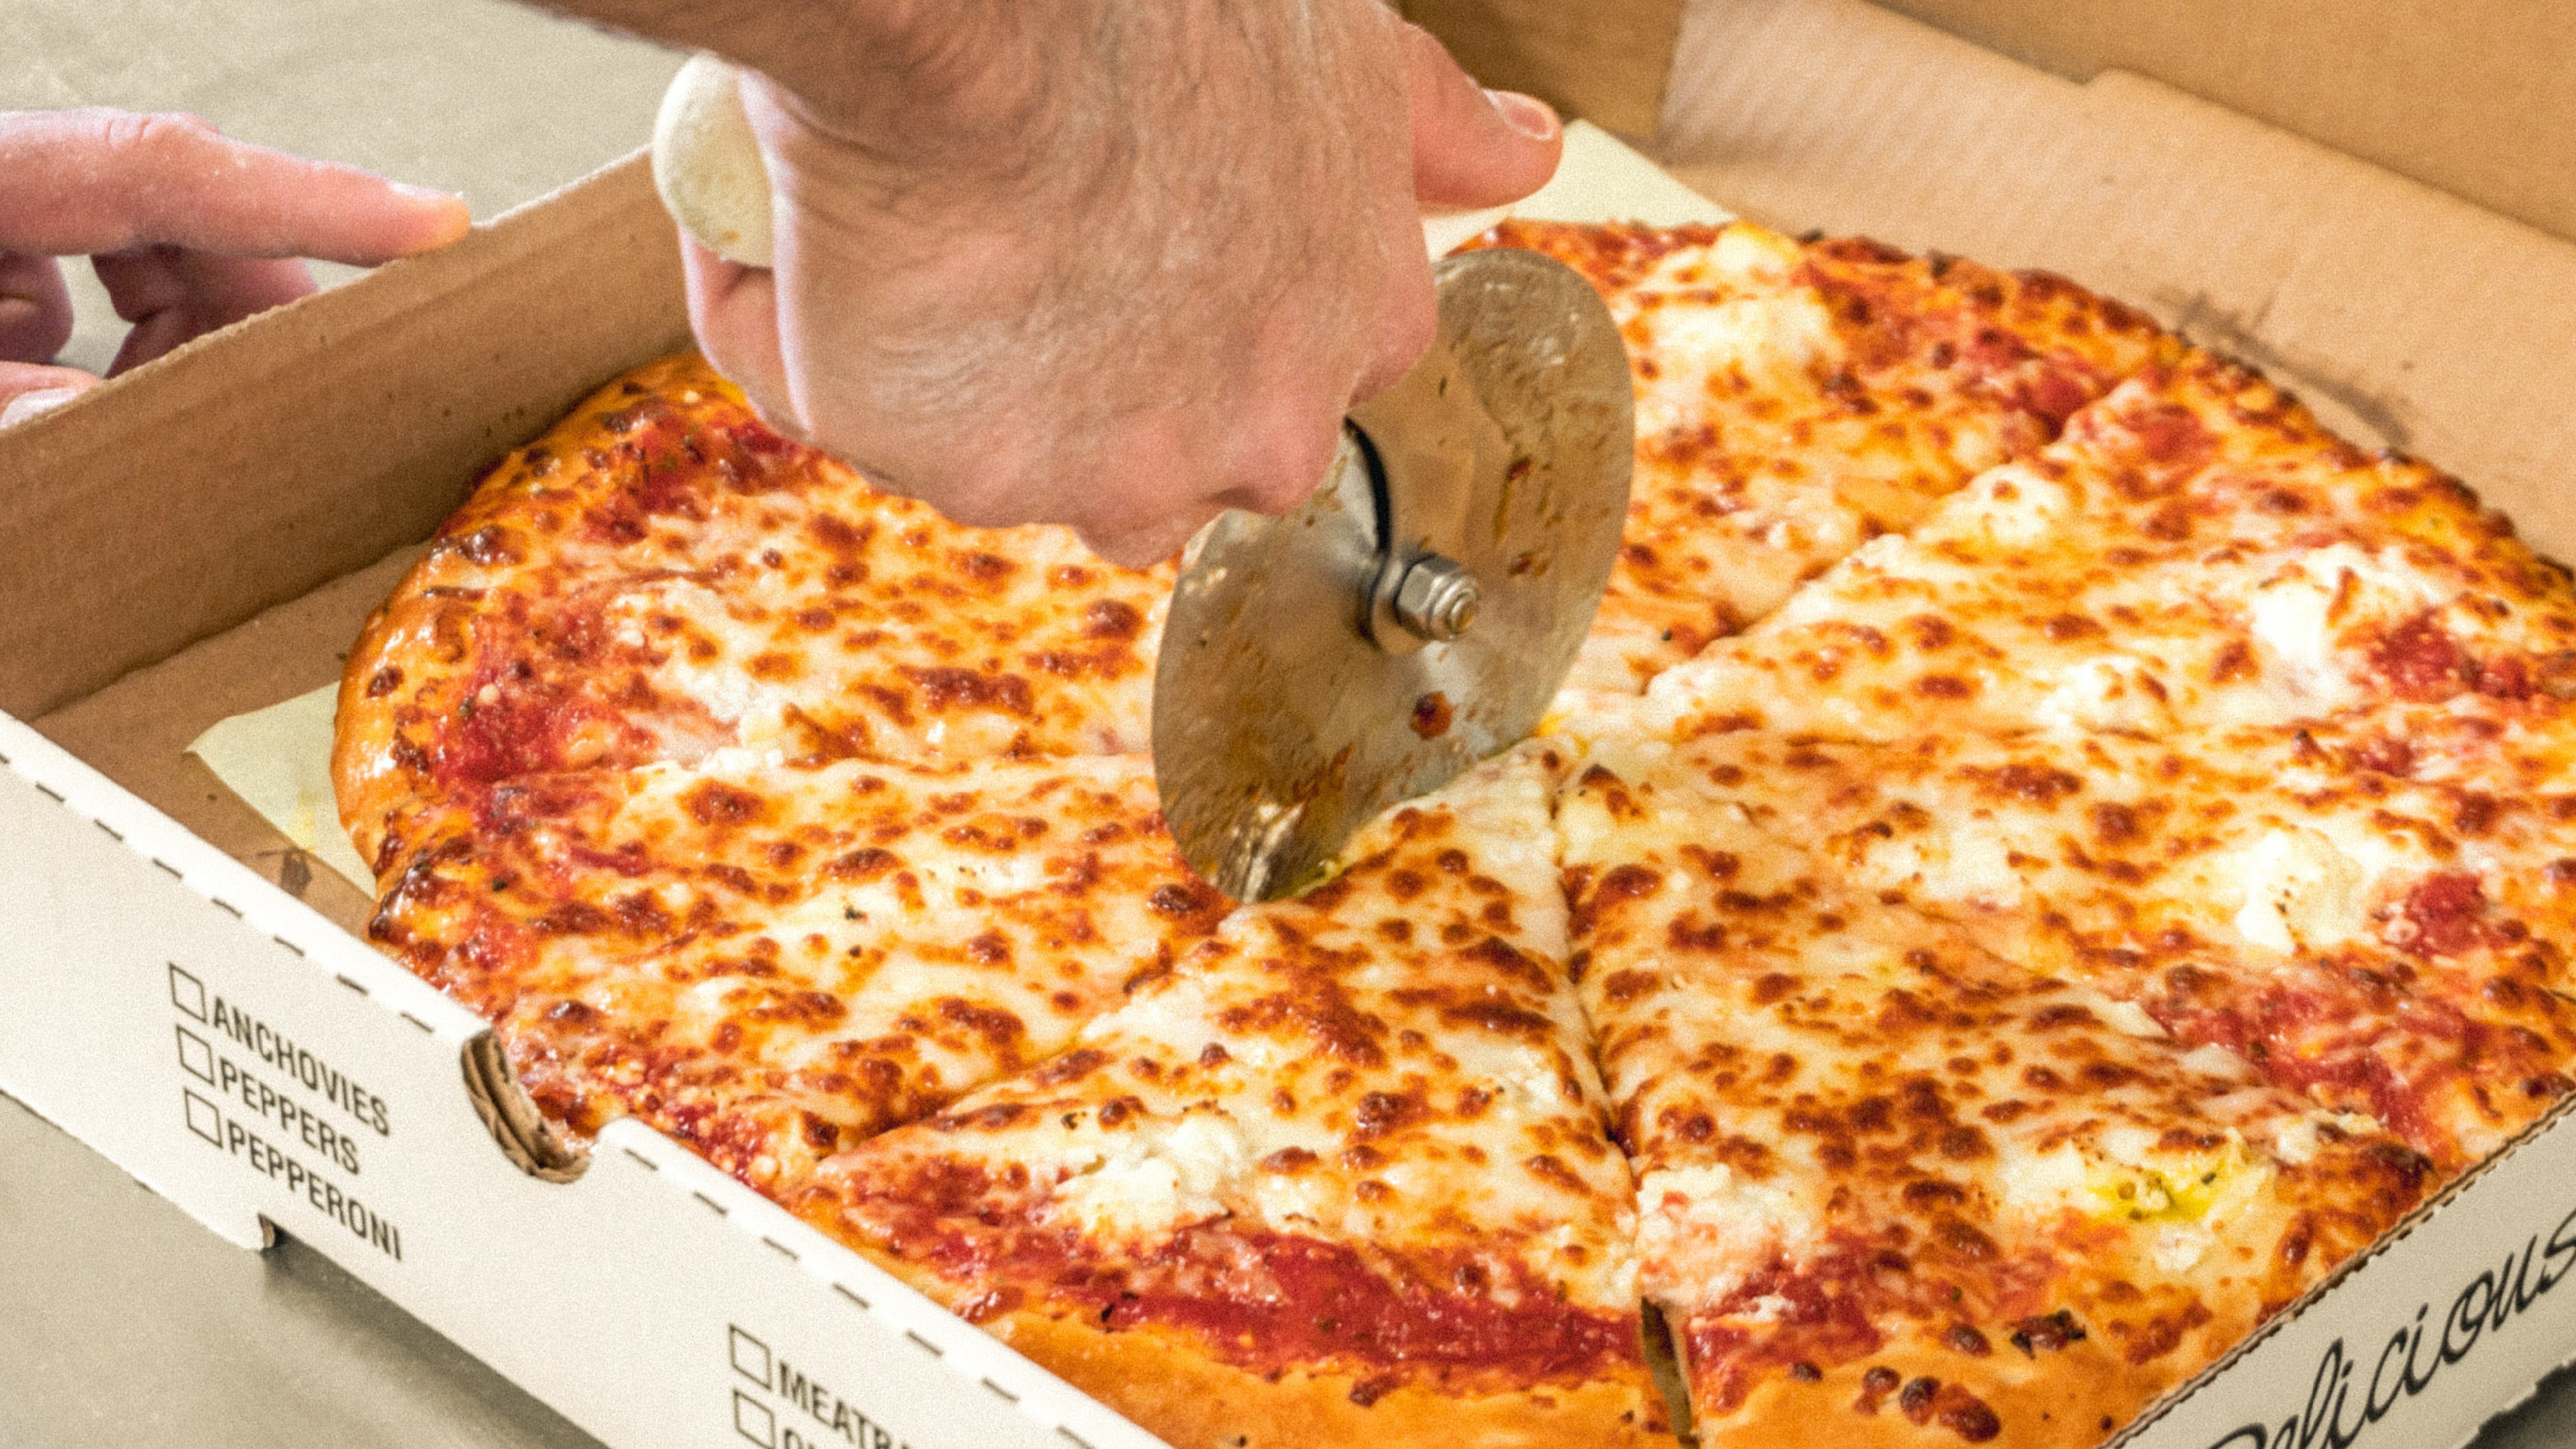 Slices Pizza & Italian Kitchen hero